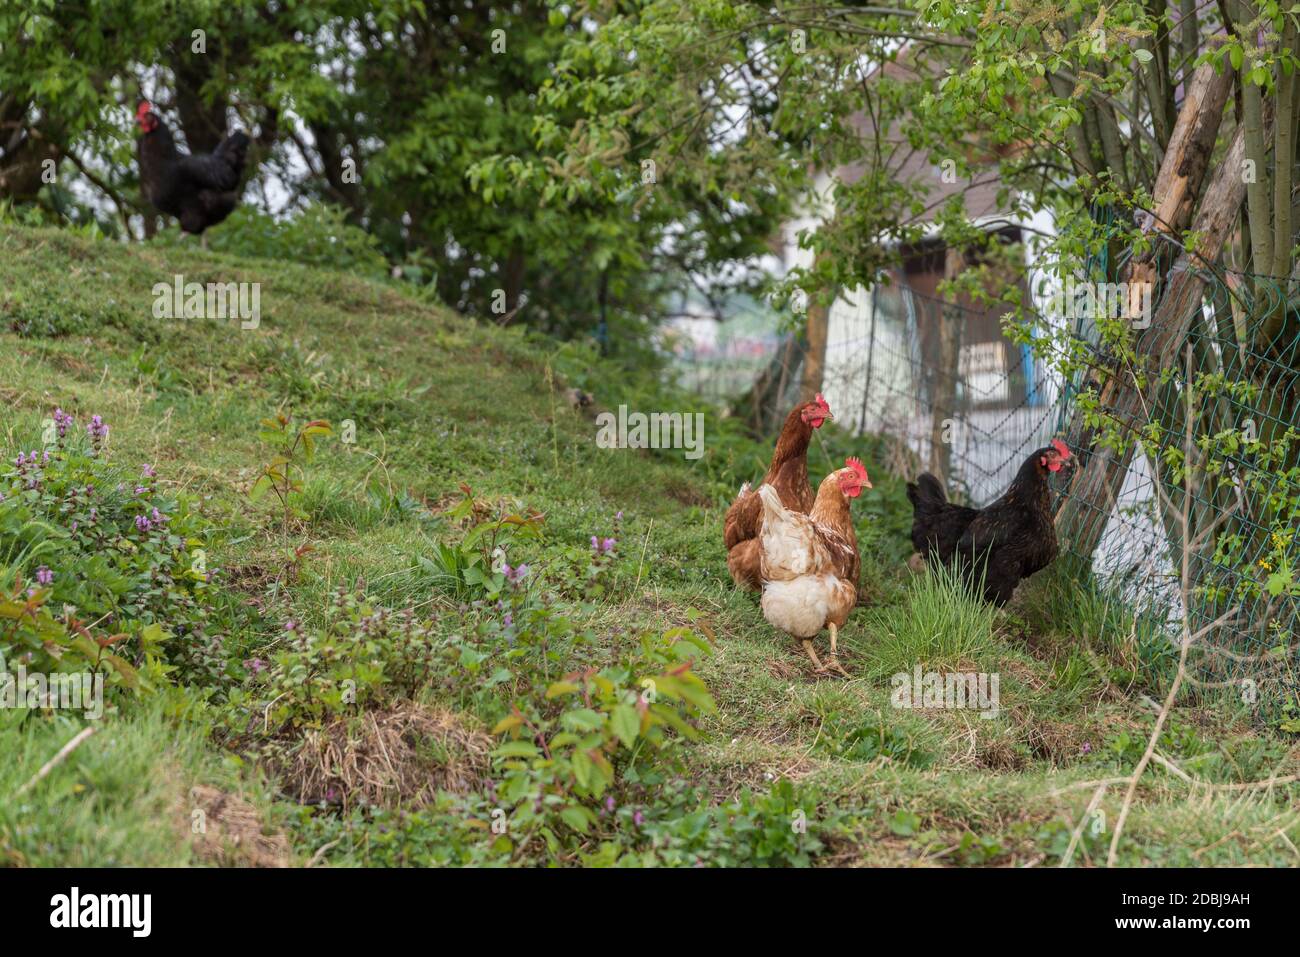 pollos de la gama libre feliz en una granja - gama libre granja de pollos Foto de stock